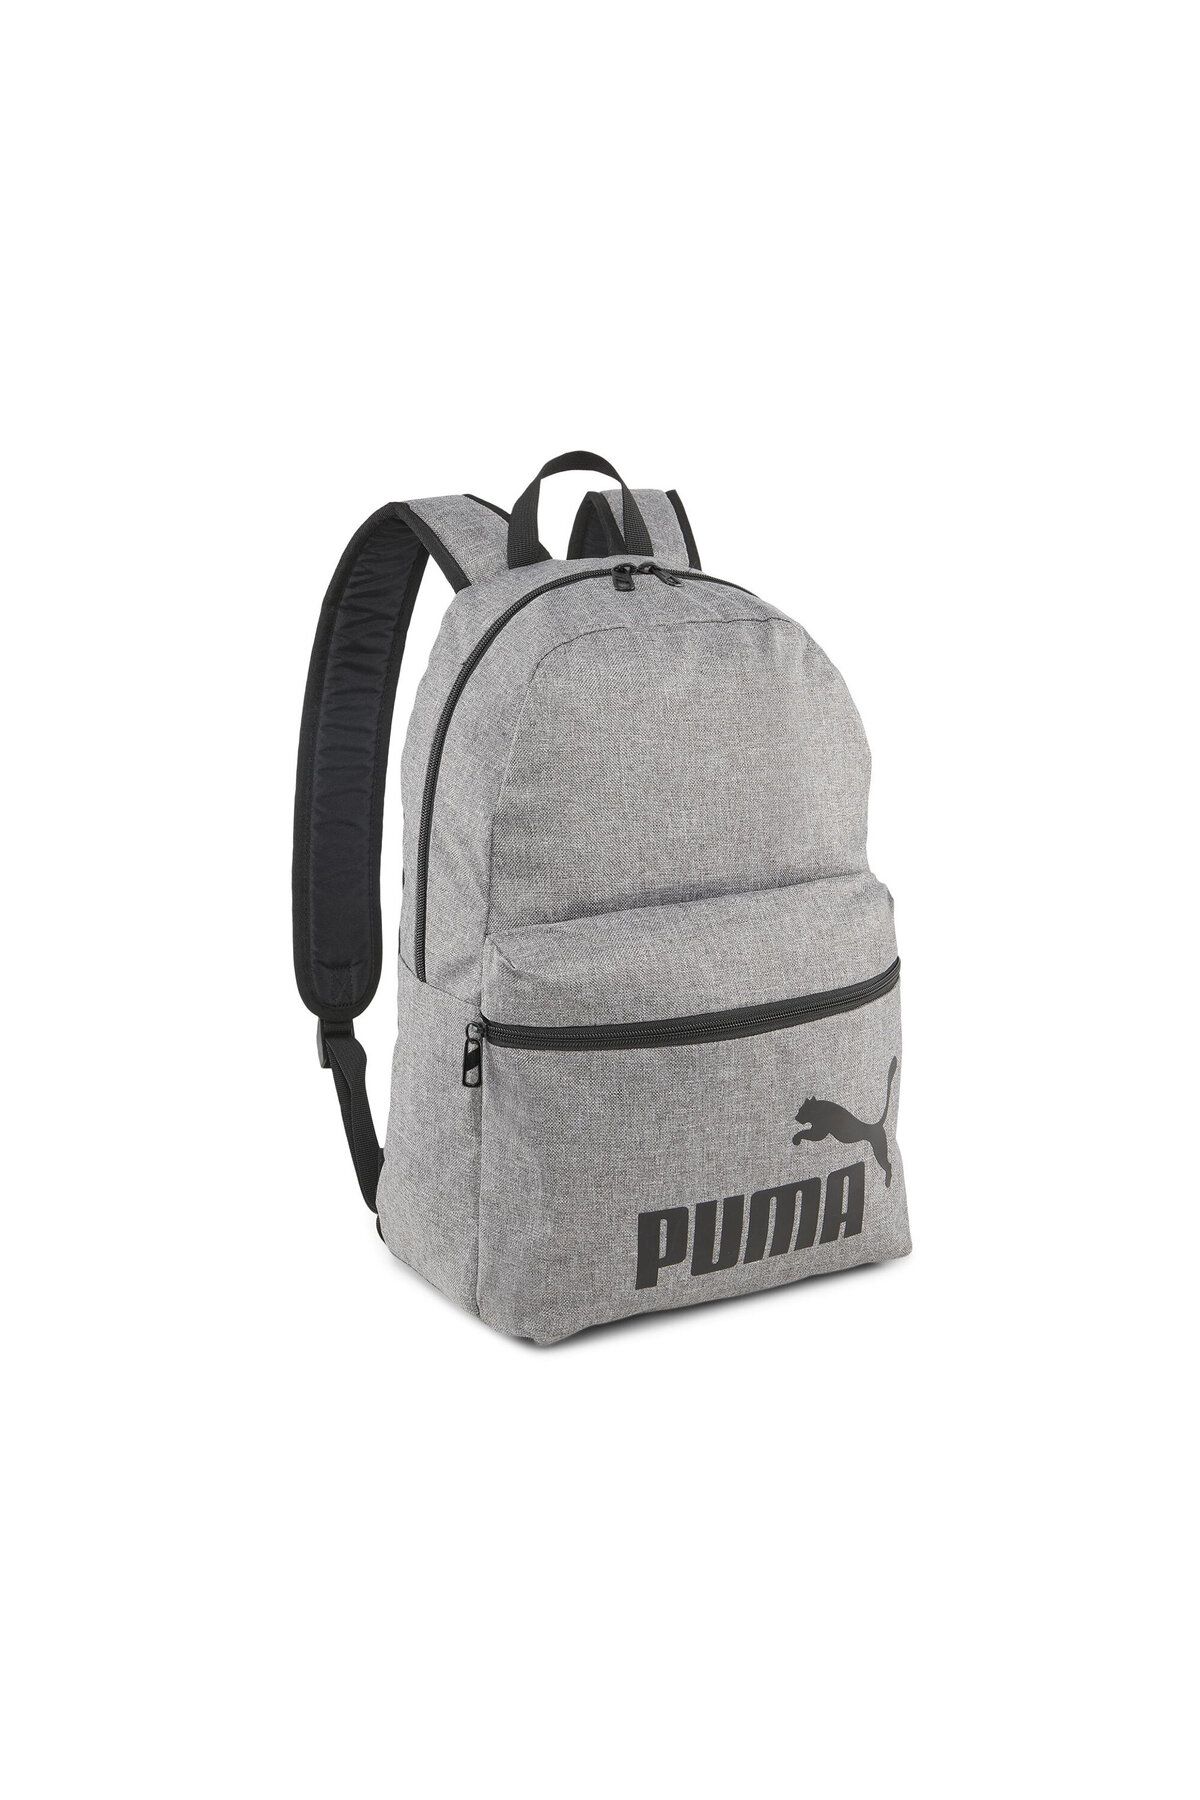 Puma Phase Backpack III Sırt Çantası 9011801 Gri